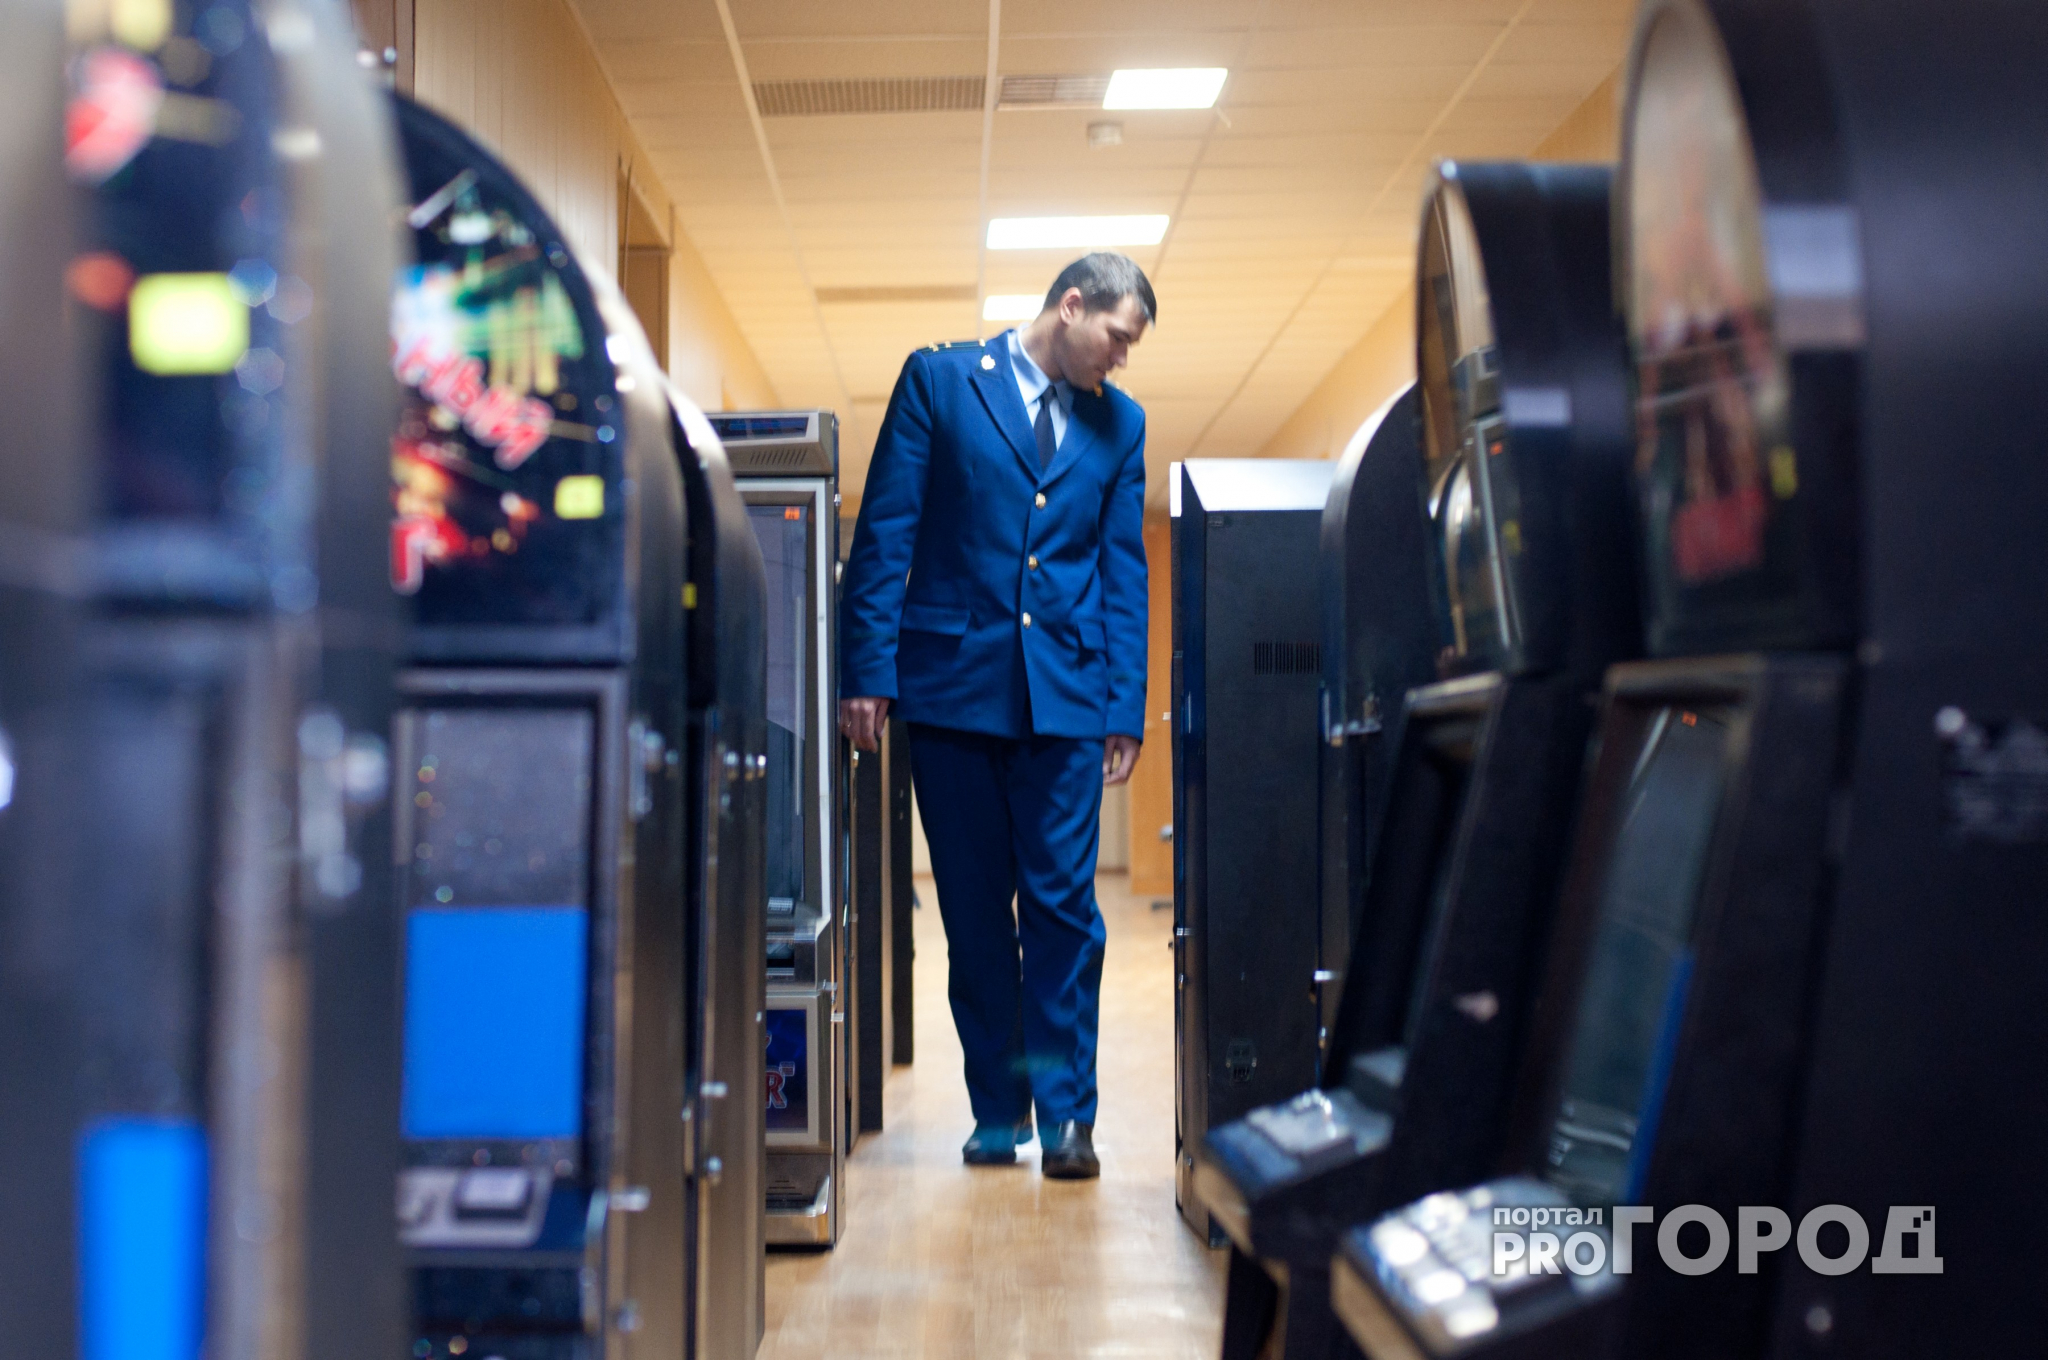 Ярославец открыл казино в офисе своего отца